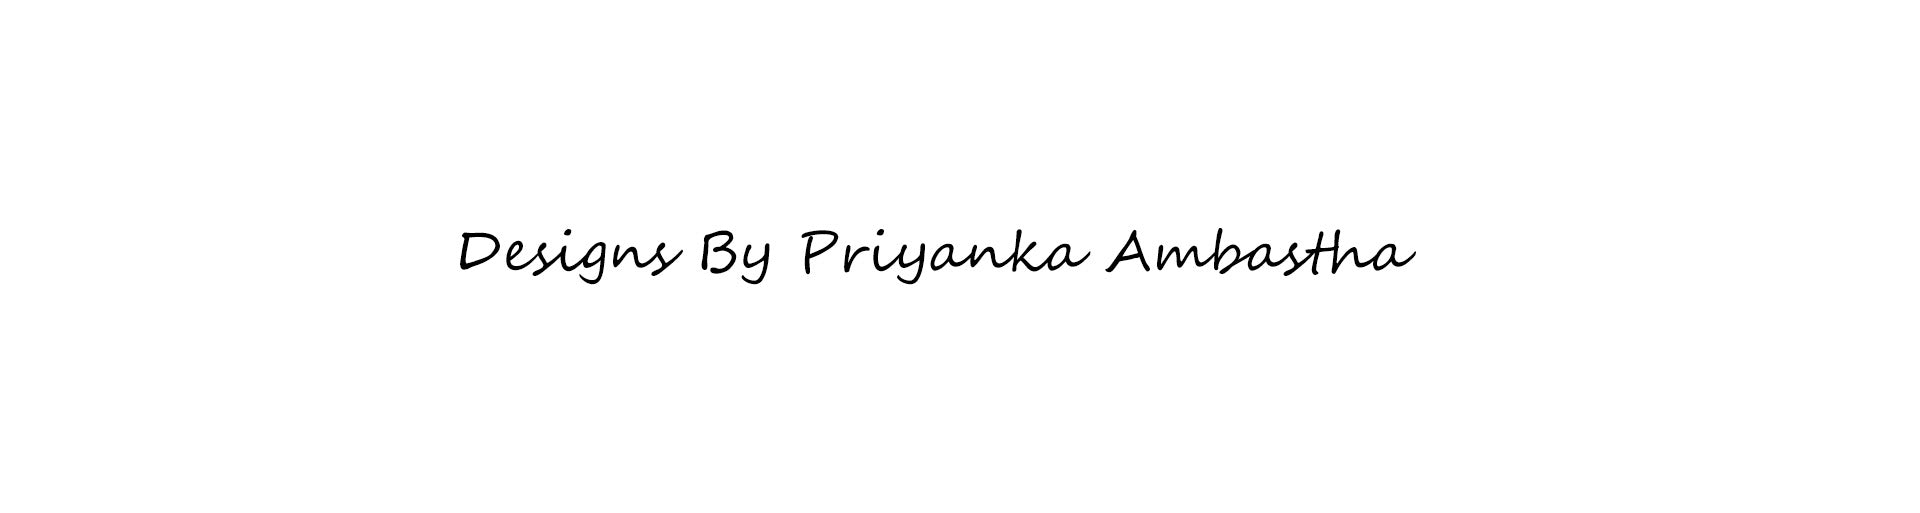 Priyanka Ambastha